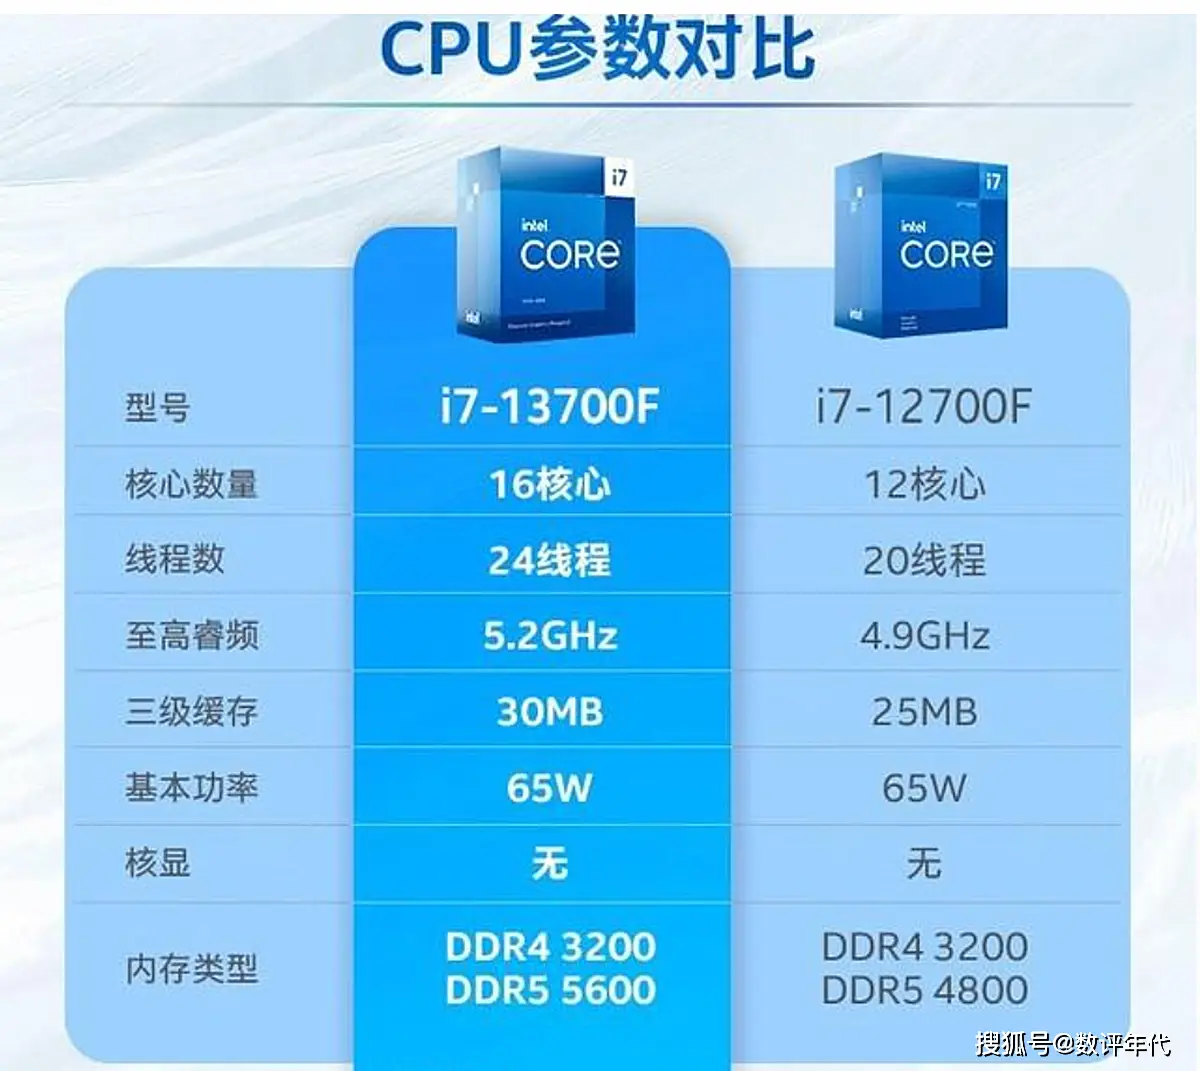 DDR5 内存：提升电脑性能的新兴热点，如何选择合适容量满足家用需求？  第2张